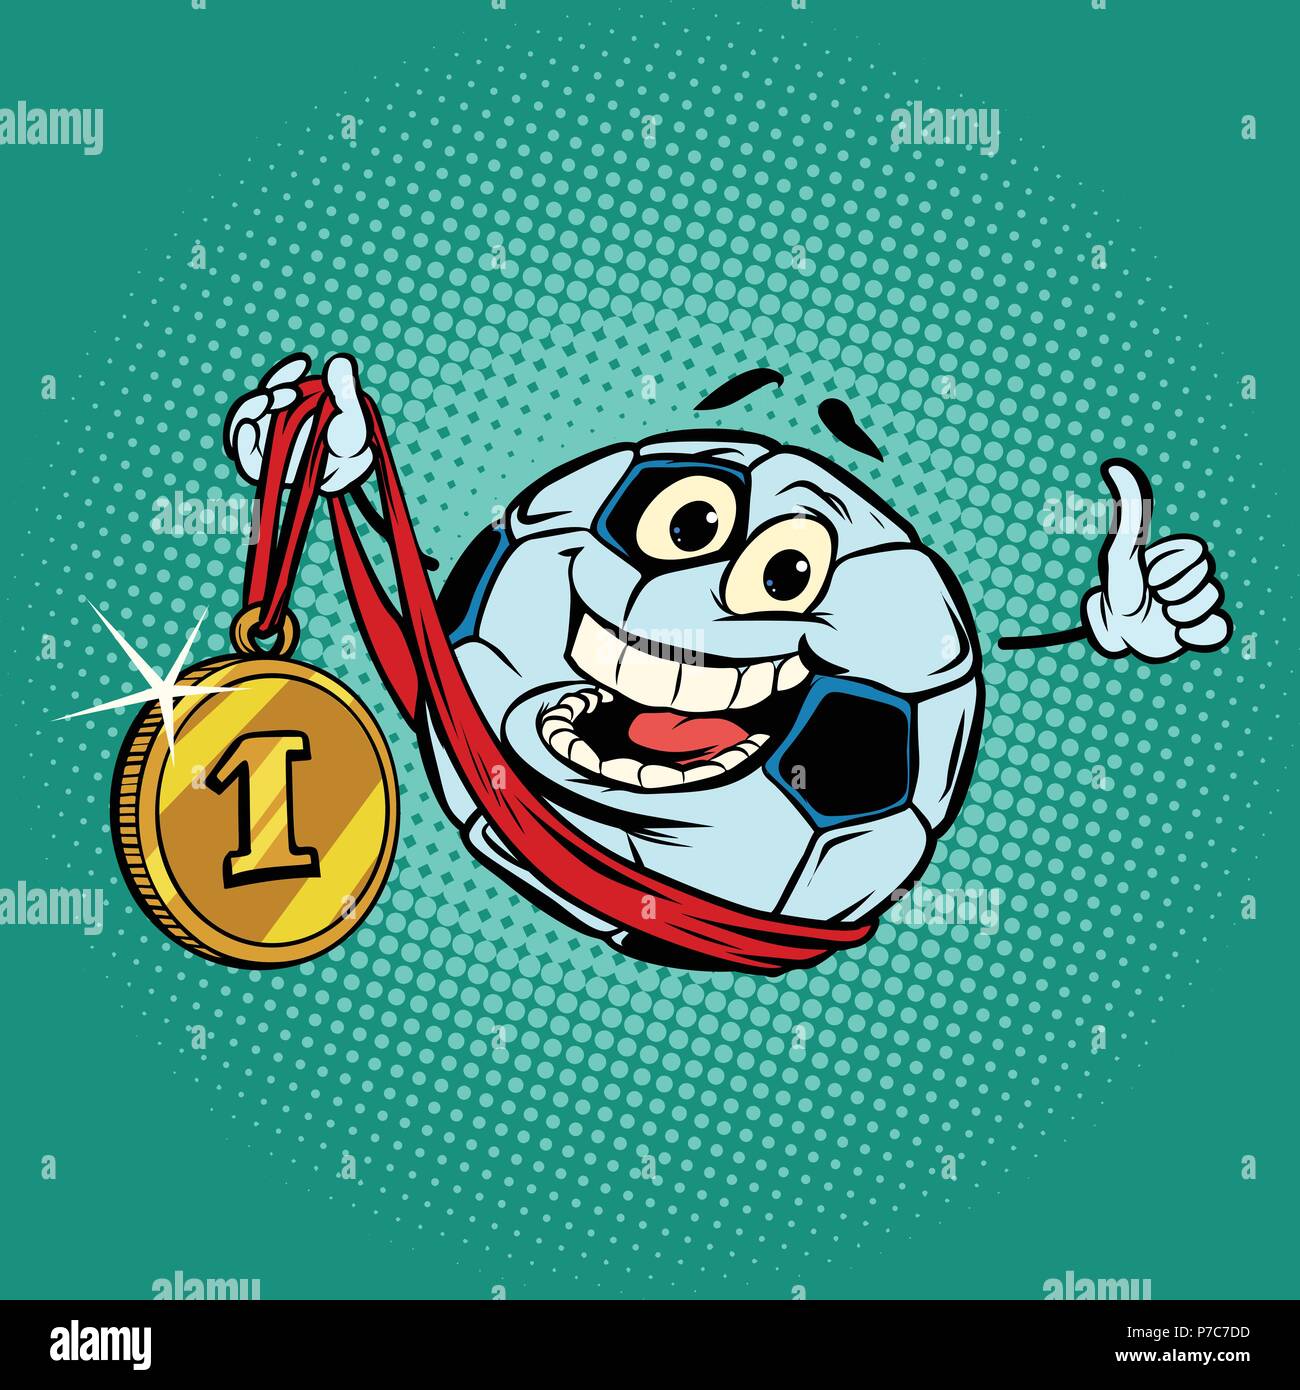 Gagnant la première place médaille d'or. Football ballon de football de caractères Illustration de Vecteur